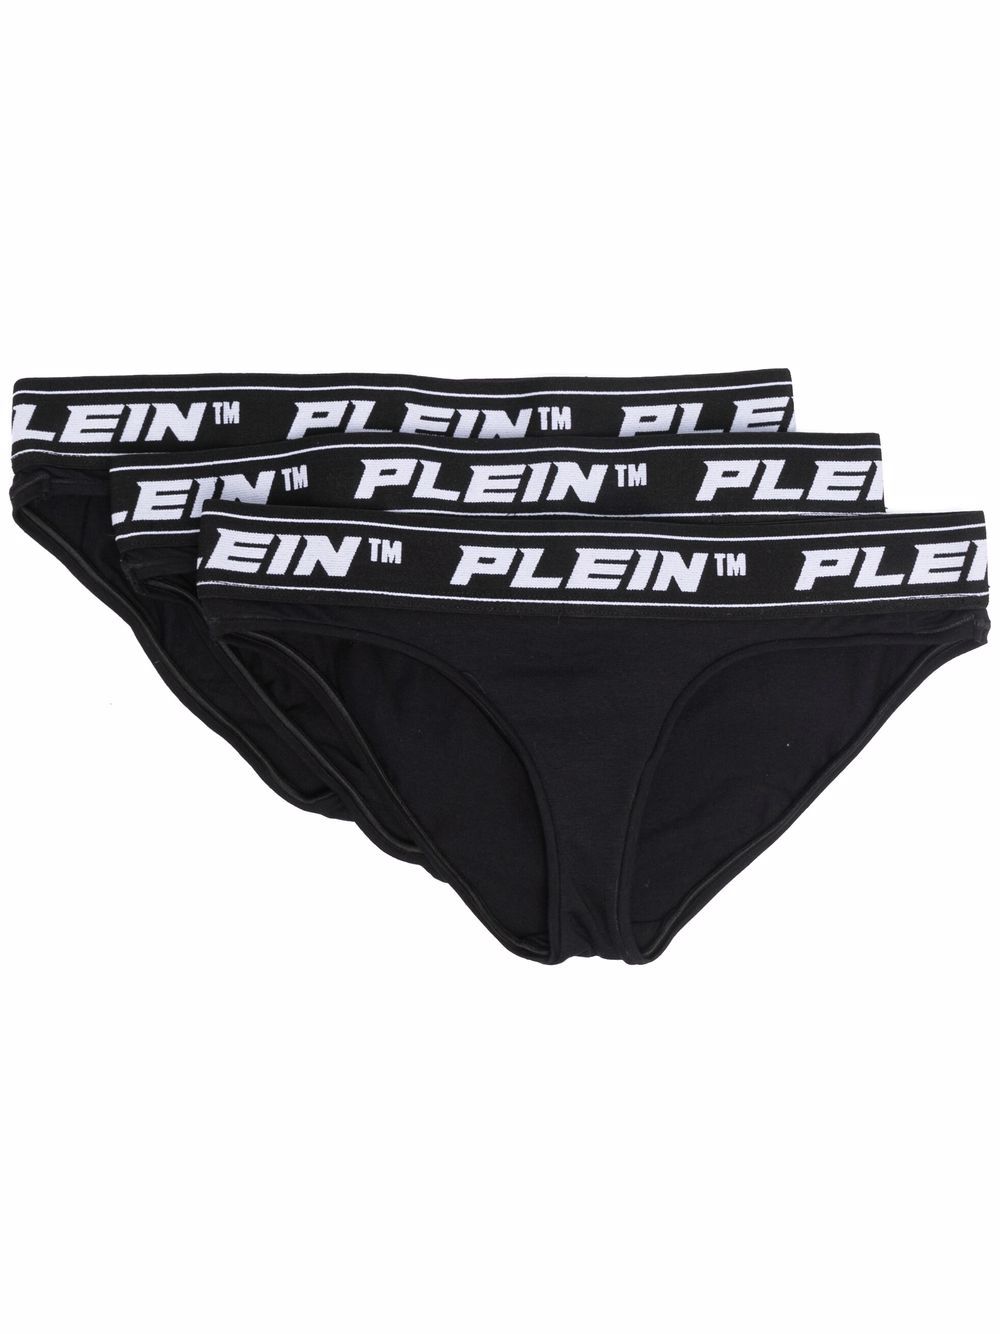 Philipp Plein logo-waistband set of 3 briefs - Black von Philipp Plein